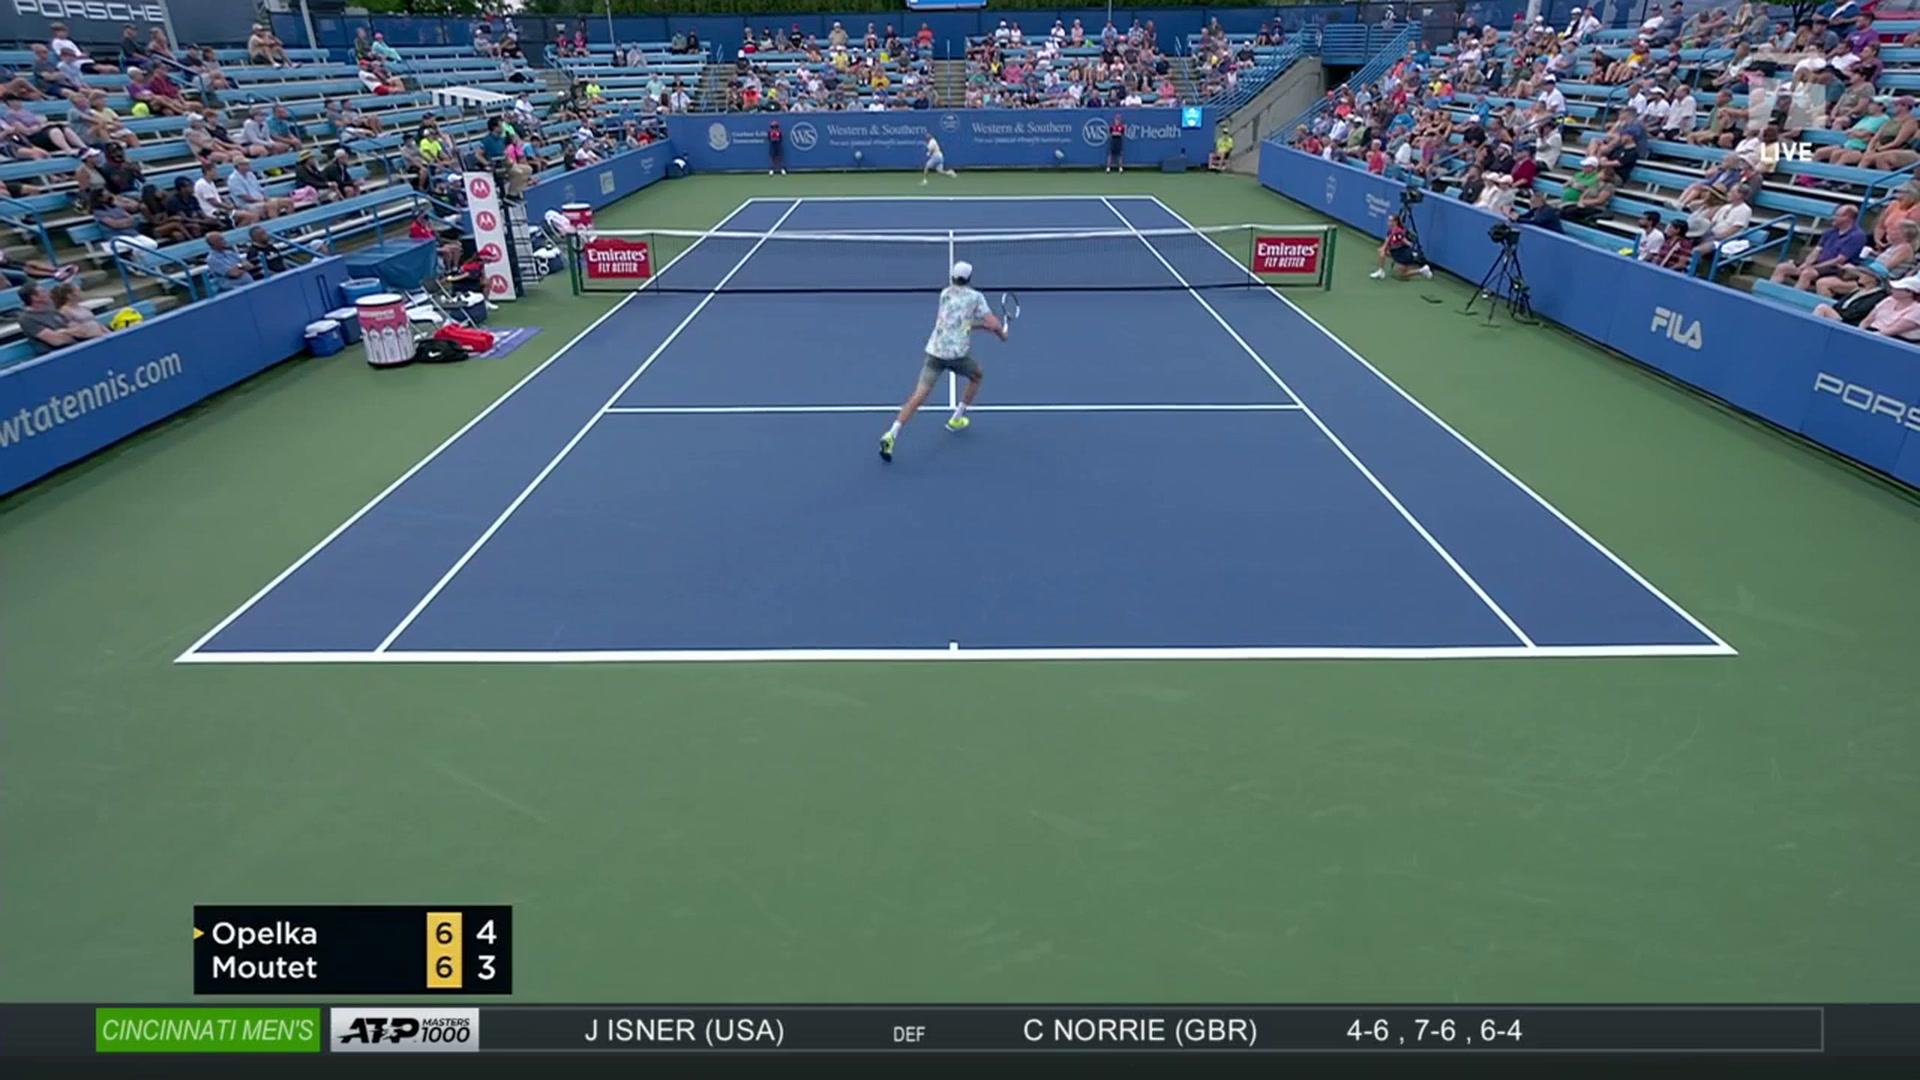 Tennis Channel Live Servebot Match Highlights Tennis